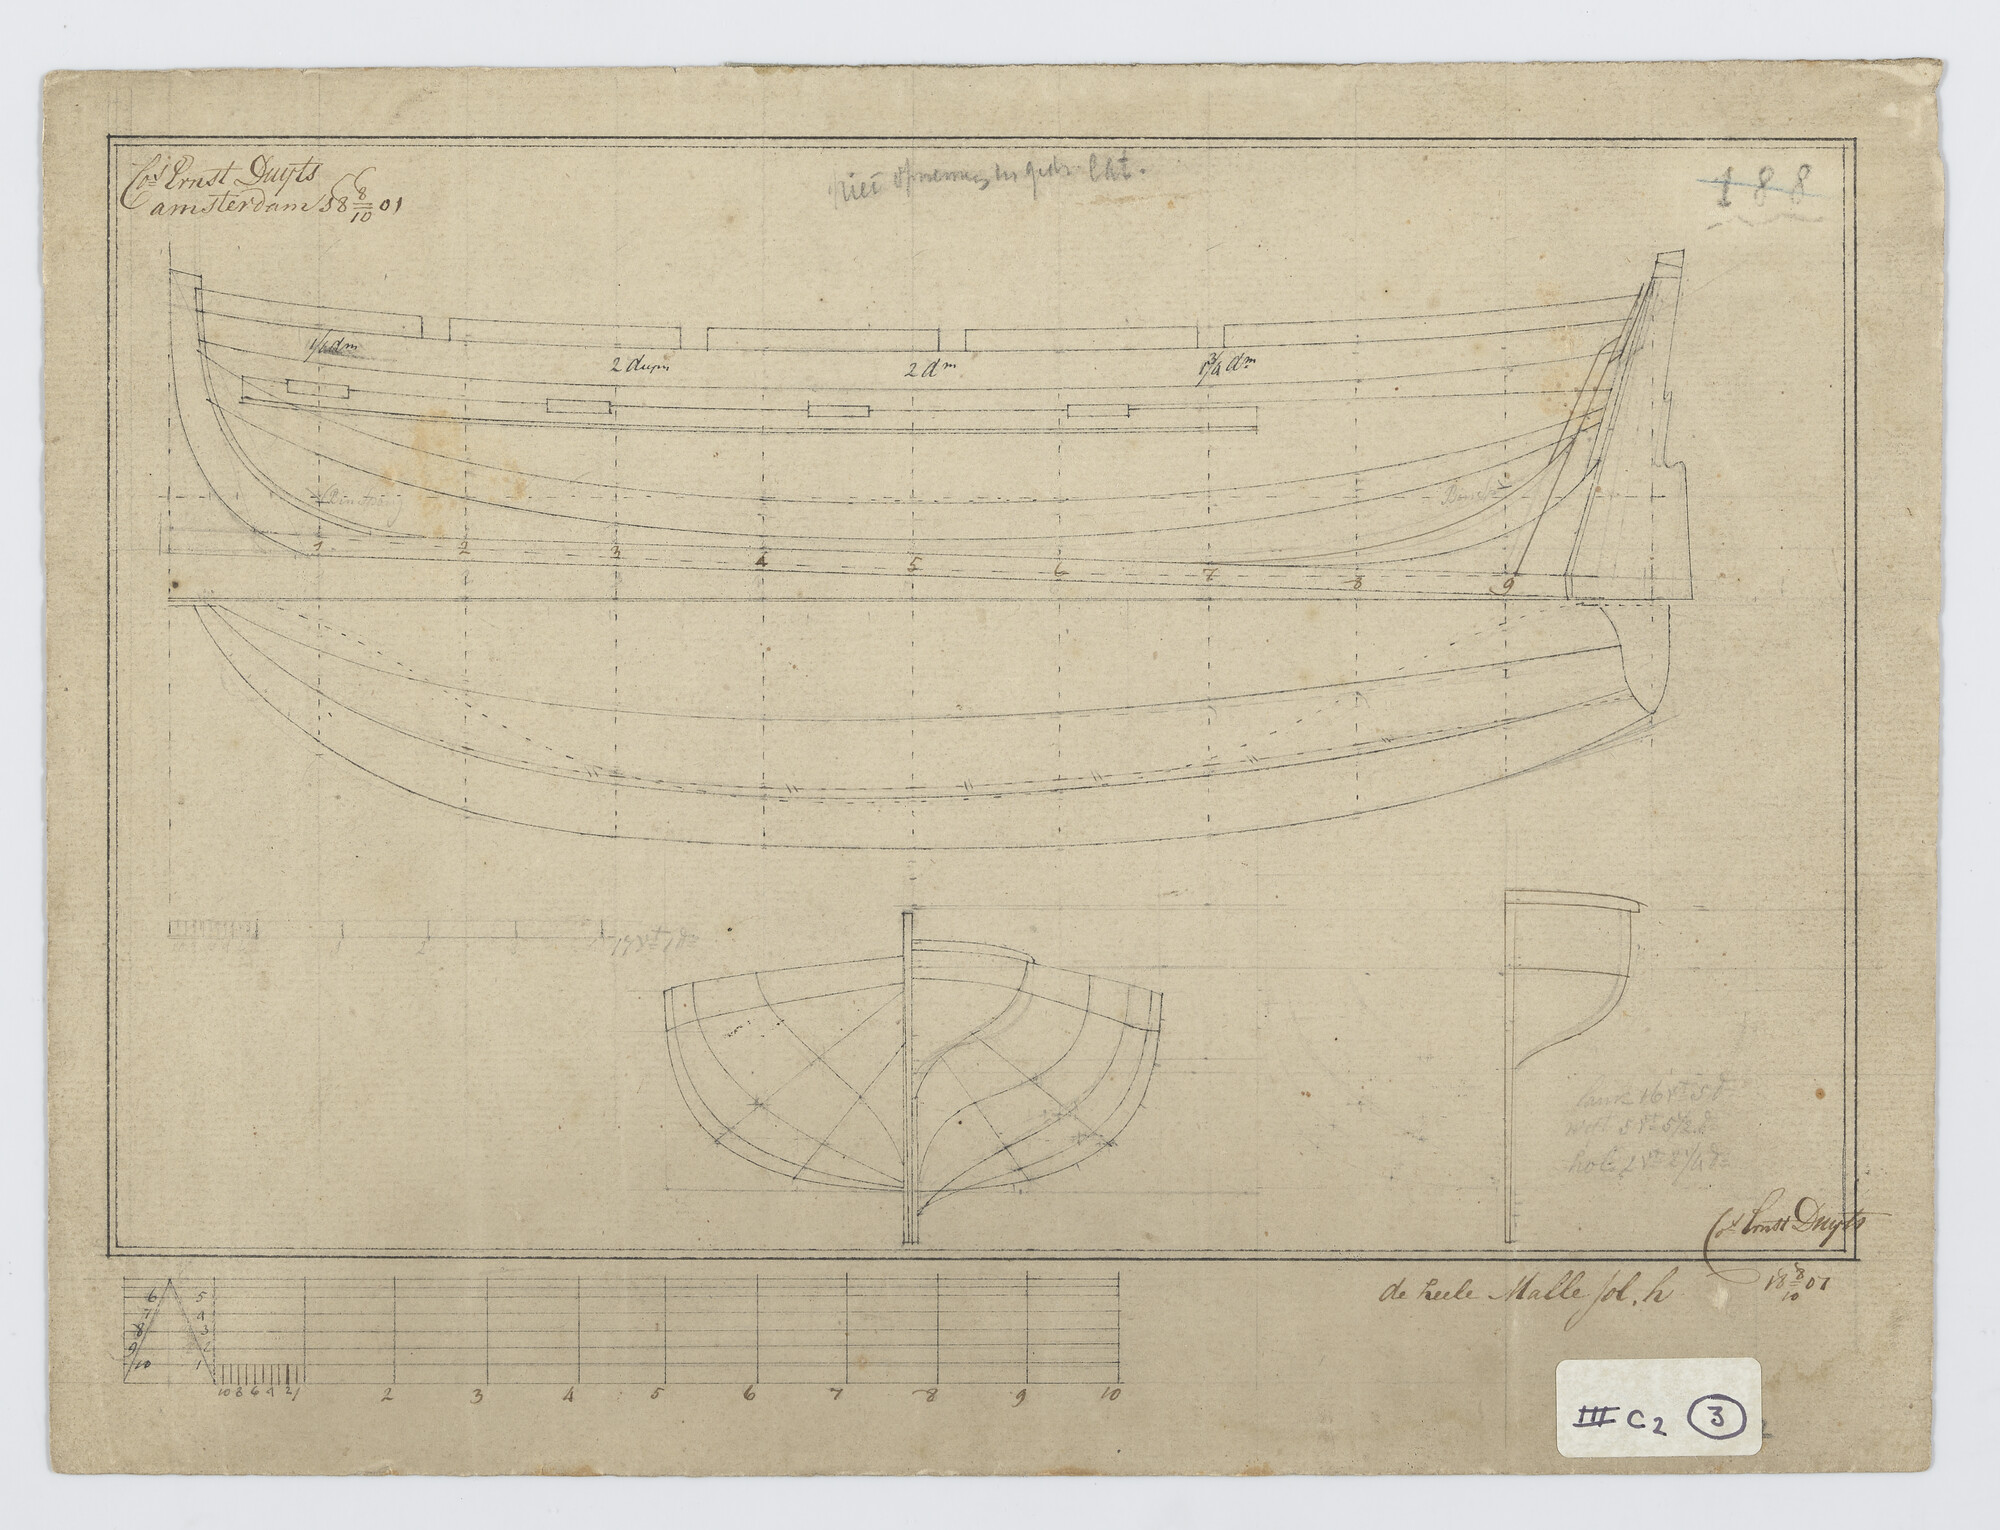 S.0188(23)13; Lijnenplan van een achtriems sloep; technische tekening